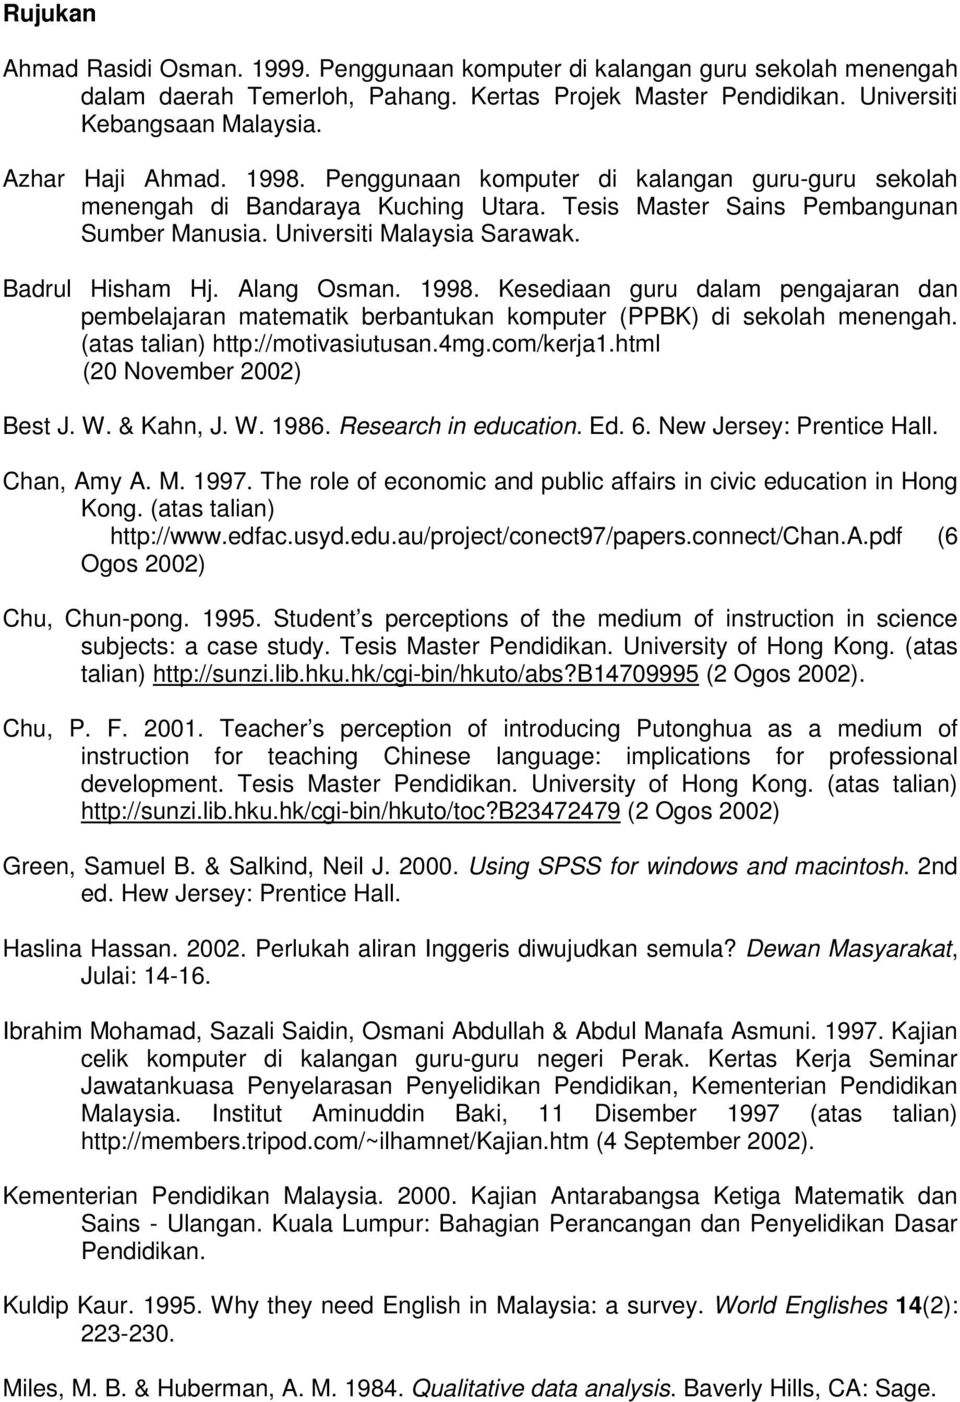 Badrul Hisham Hj. Alang Osman. 1998. Kesediaan guru dalam pengajaran dan pembelajaran matematik berbantukan komputer (PPBK) di sekolah menengah. (atas talian) http://motivasiutusan.4mg.com/kerja1.